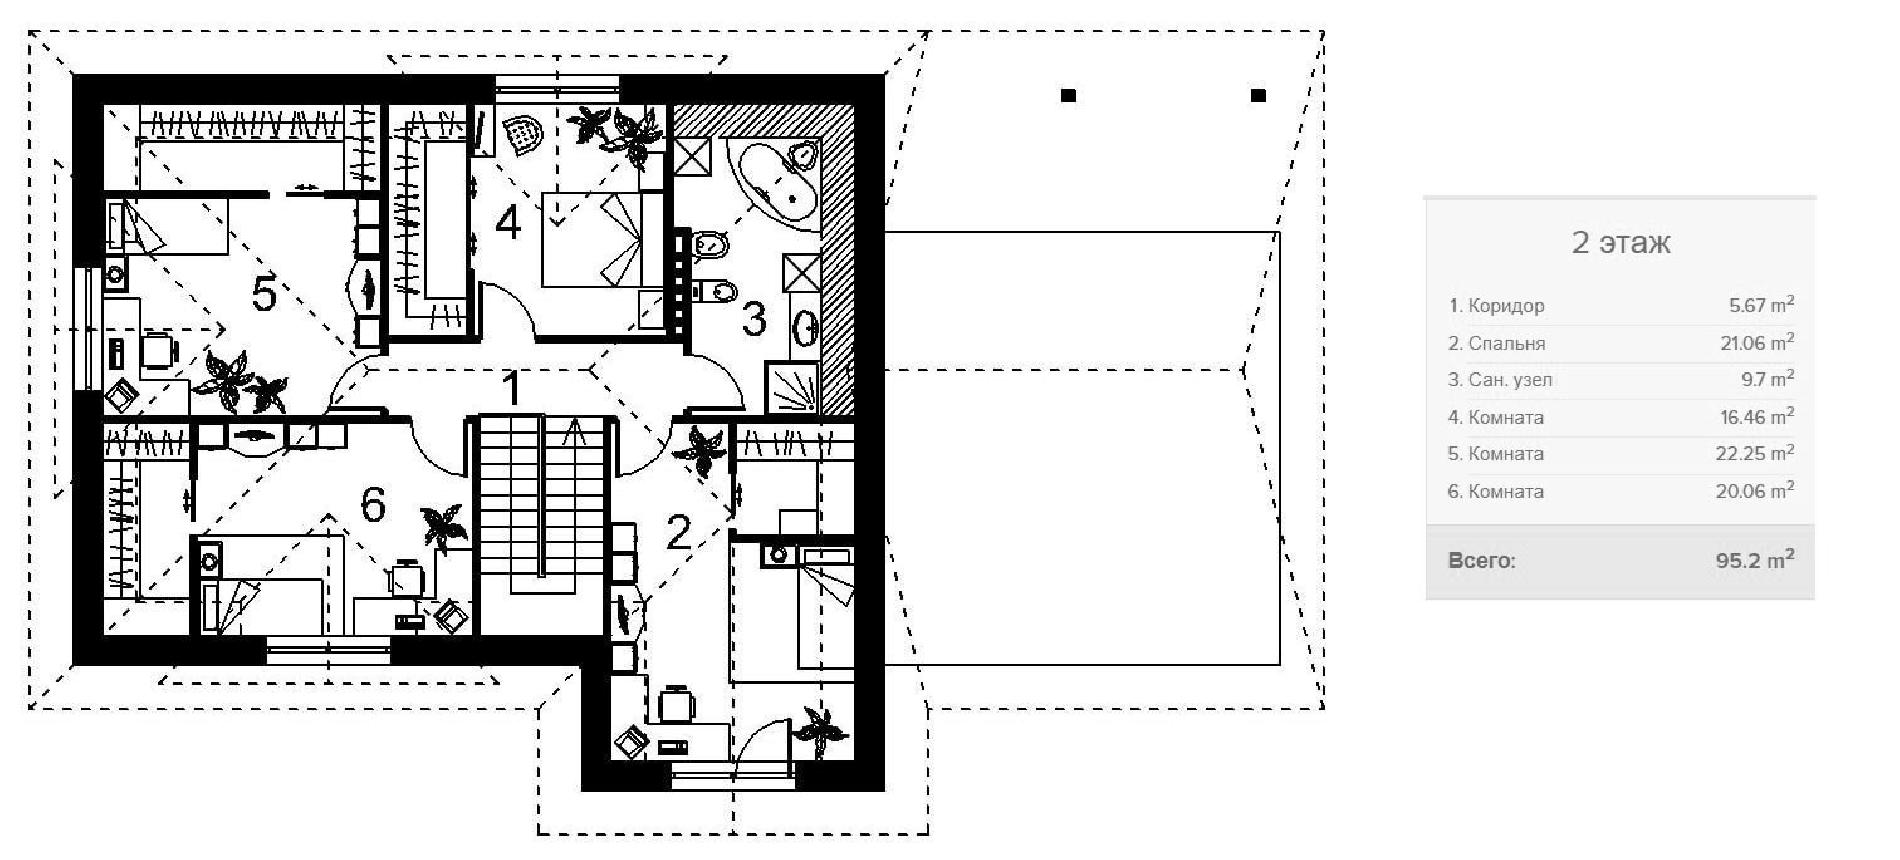 Планировка проекта дома №120-212 120-212_p (2)-min.jpg